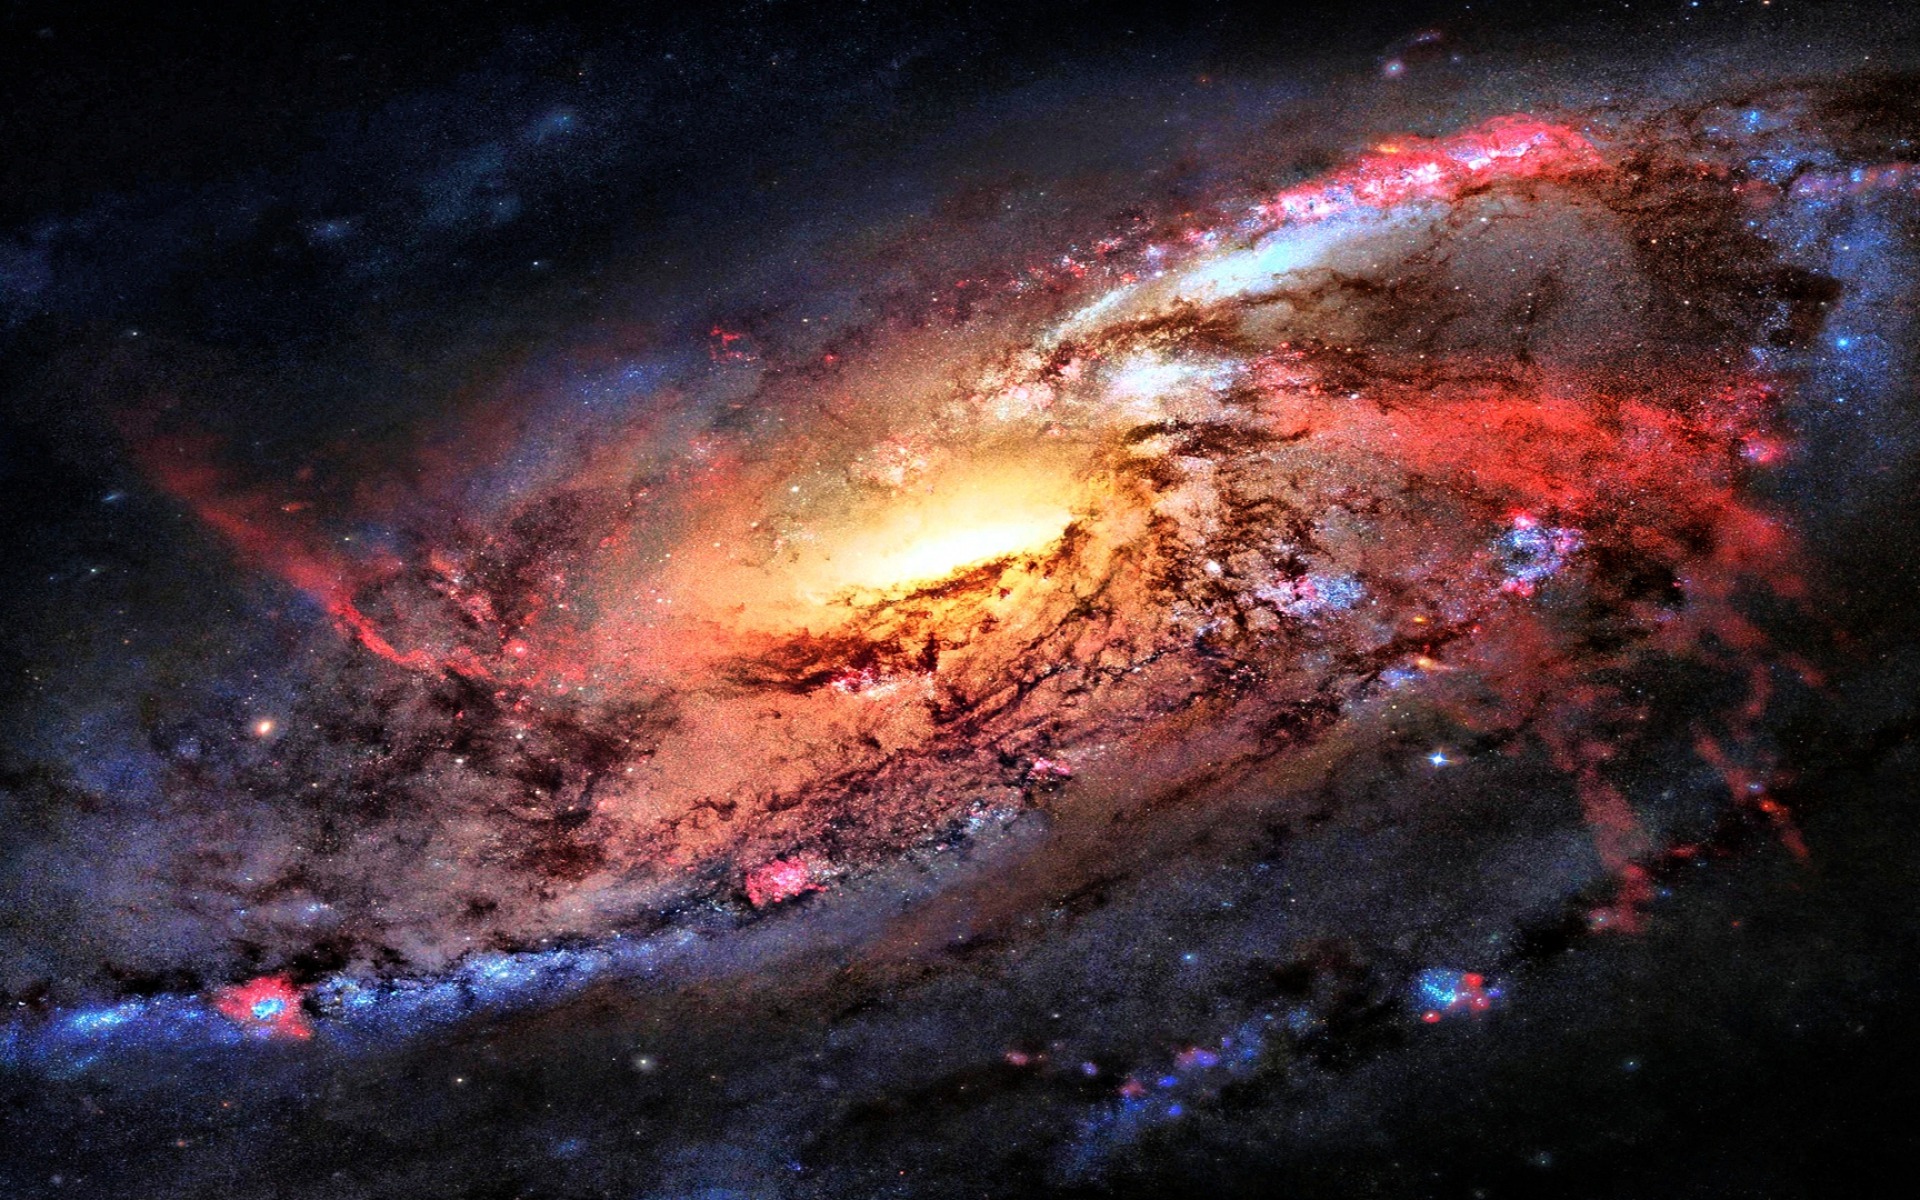 16k ultra hd wallpaper 15360x8640,weltraum,astronomisches objekt,galaxis,atmosphäre,universum